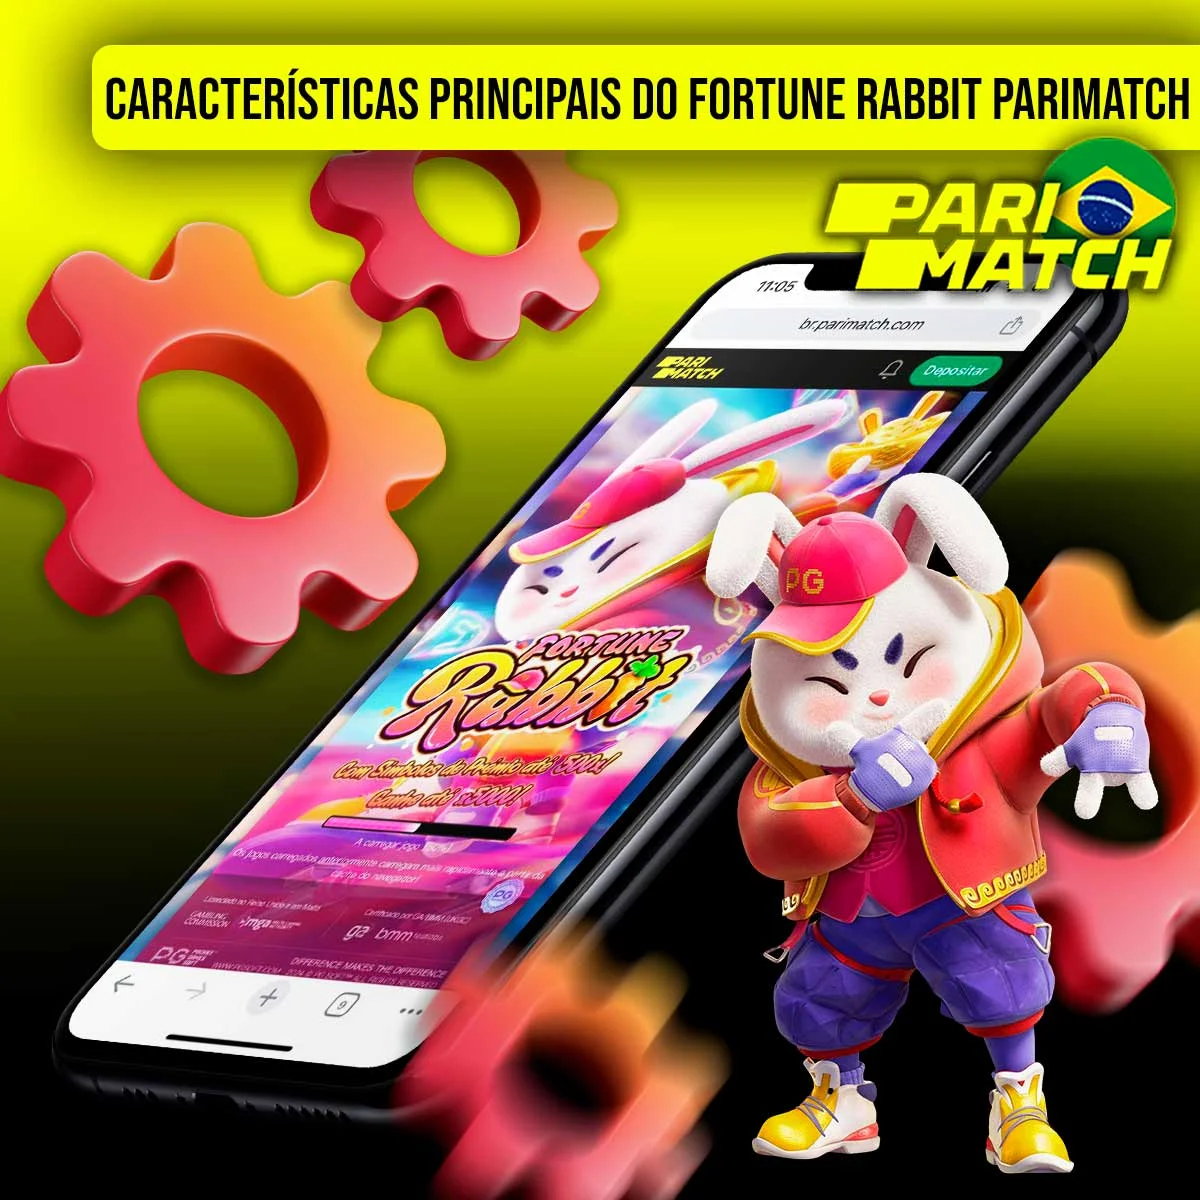 Quais são as principais características do Parimatch Fortune Rabbit